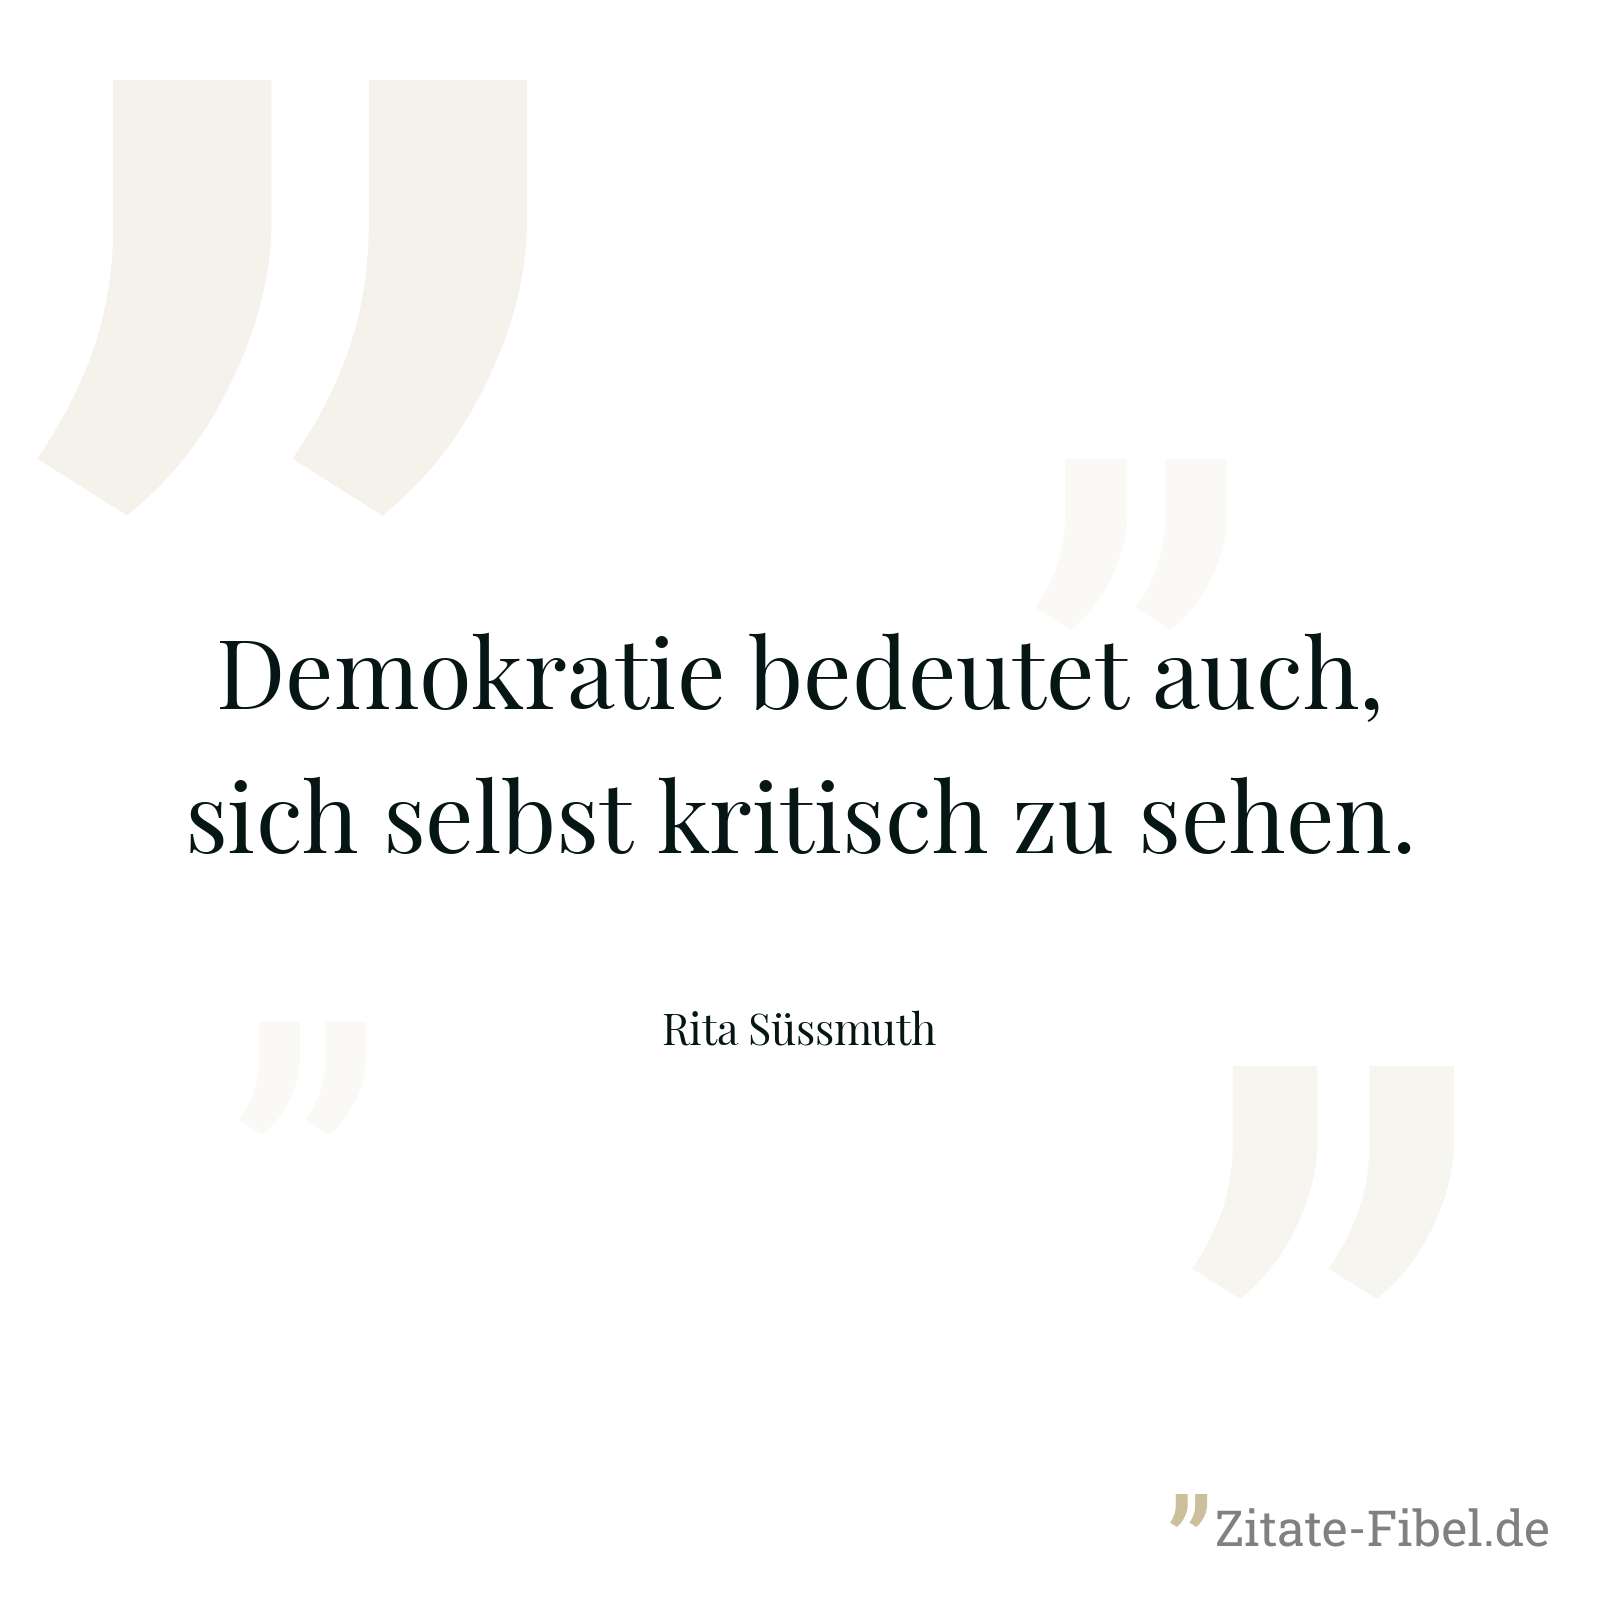 Demokratie bedeutet auch, sich selbst kritisch zu sehen. - Rita Süssmuth